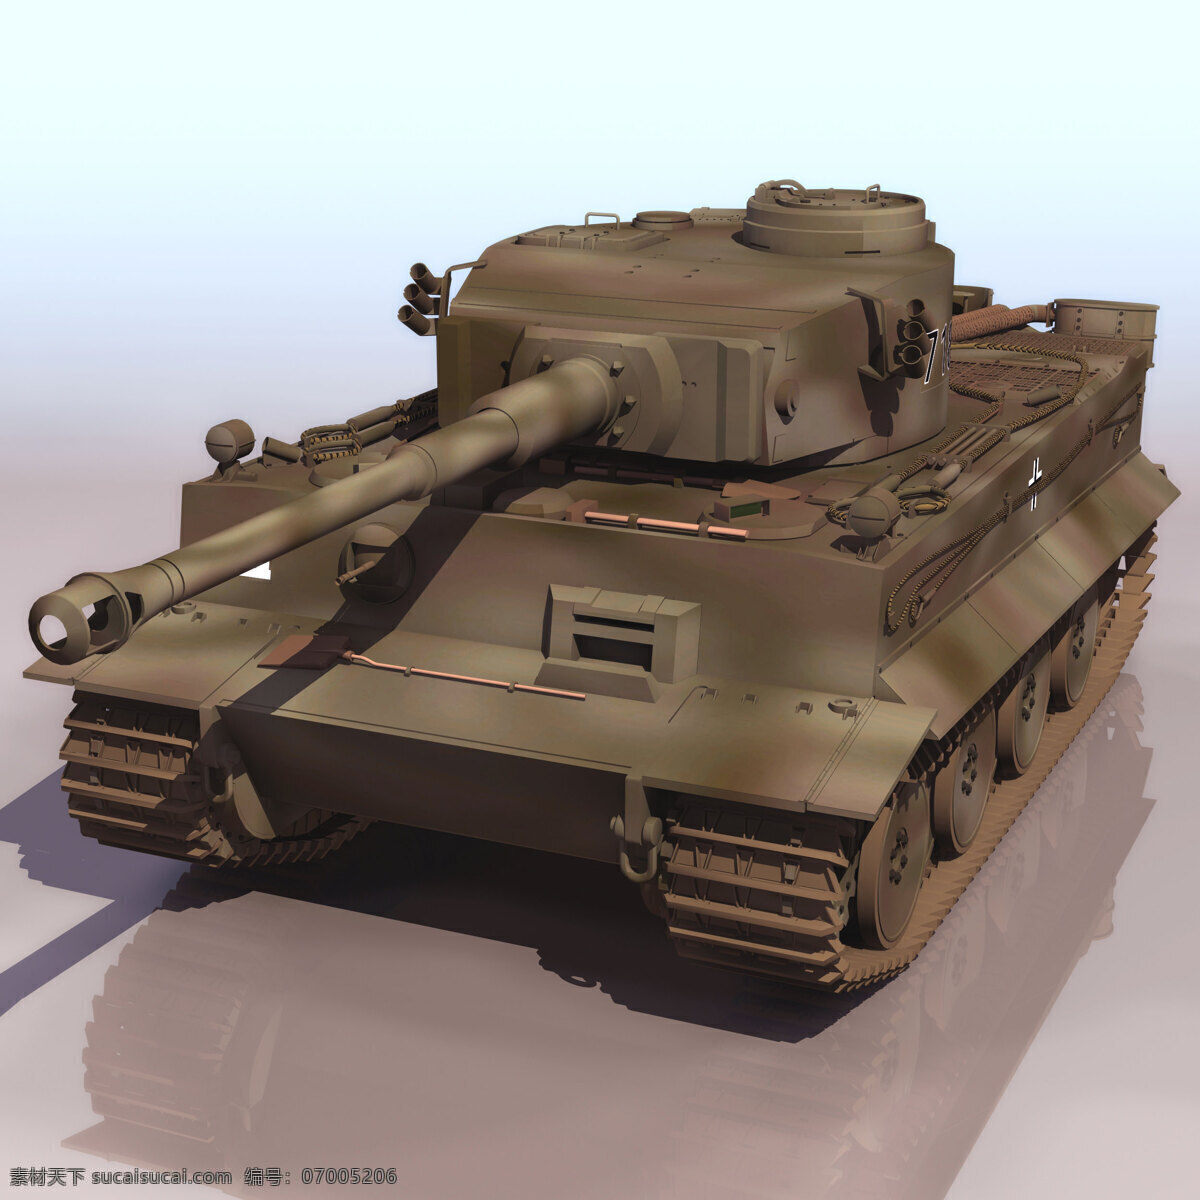 德国 虎 式 坦克 模型 德国虎式坦克 装甲车 3d模型素材 游戏cg模型